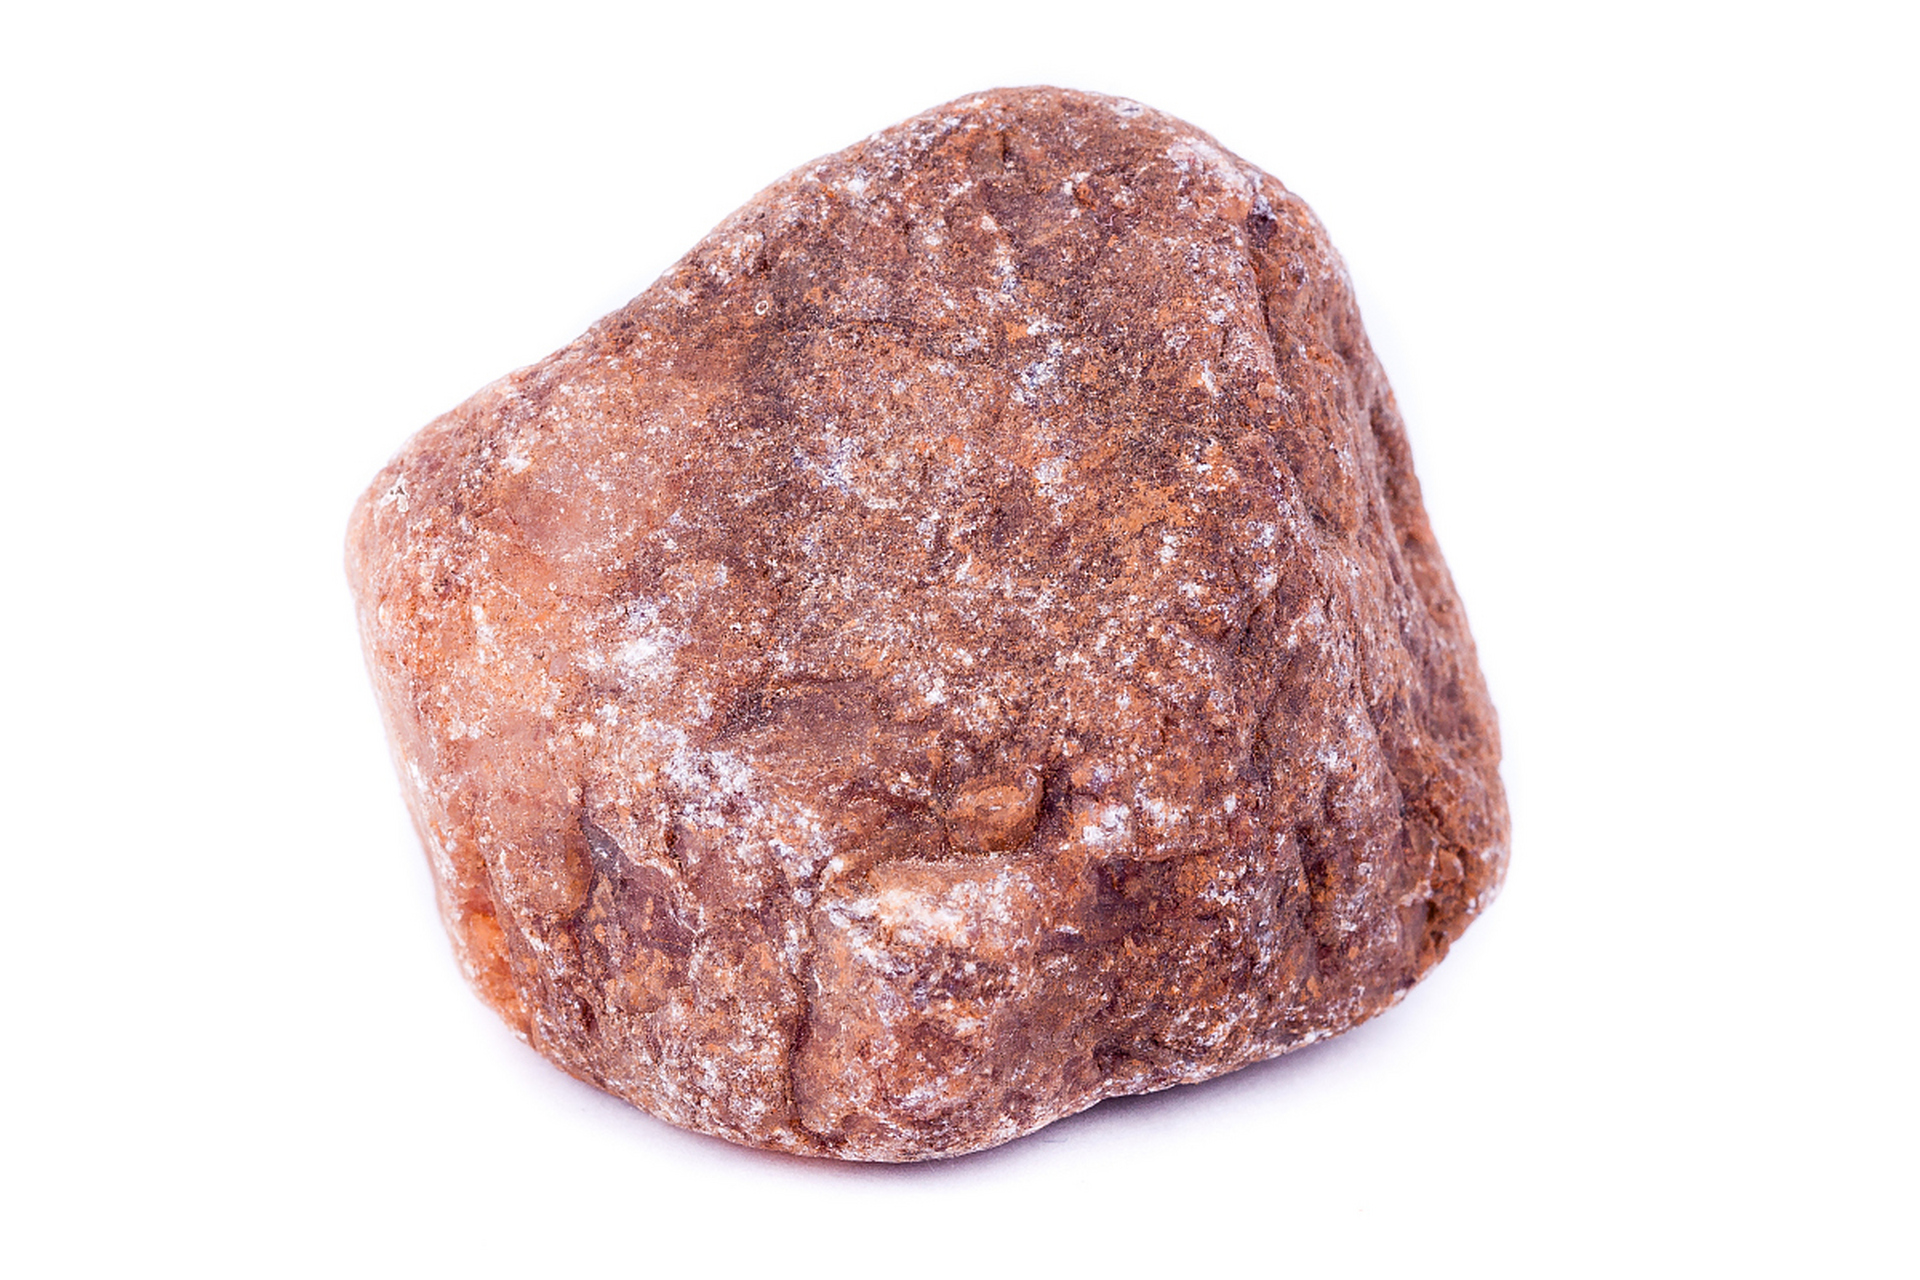 朱砂原石是一种珍贵的红色矿石,可通过观察颜色,光泽,形状和化学反应